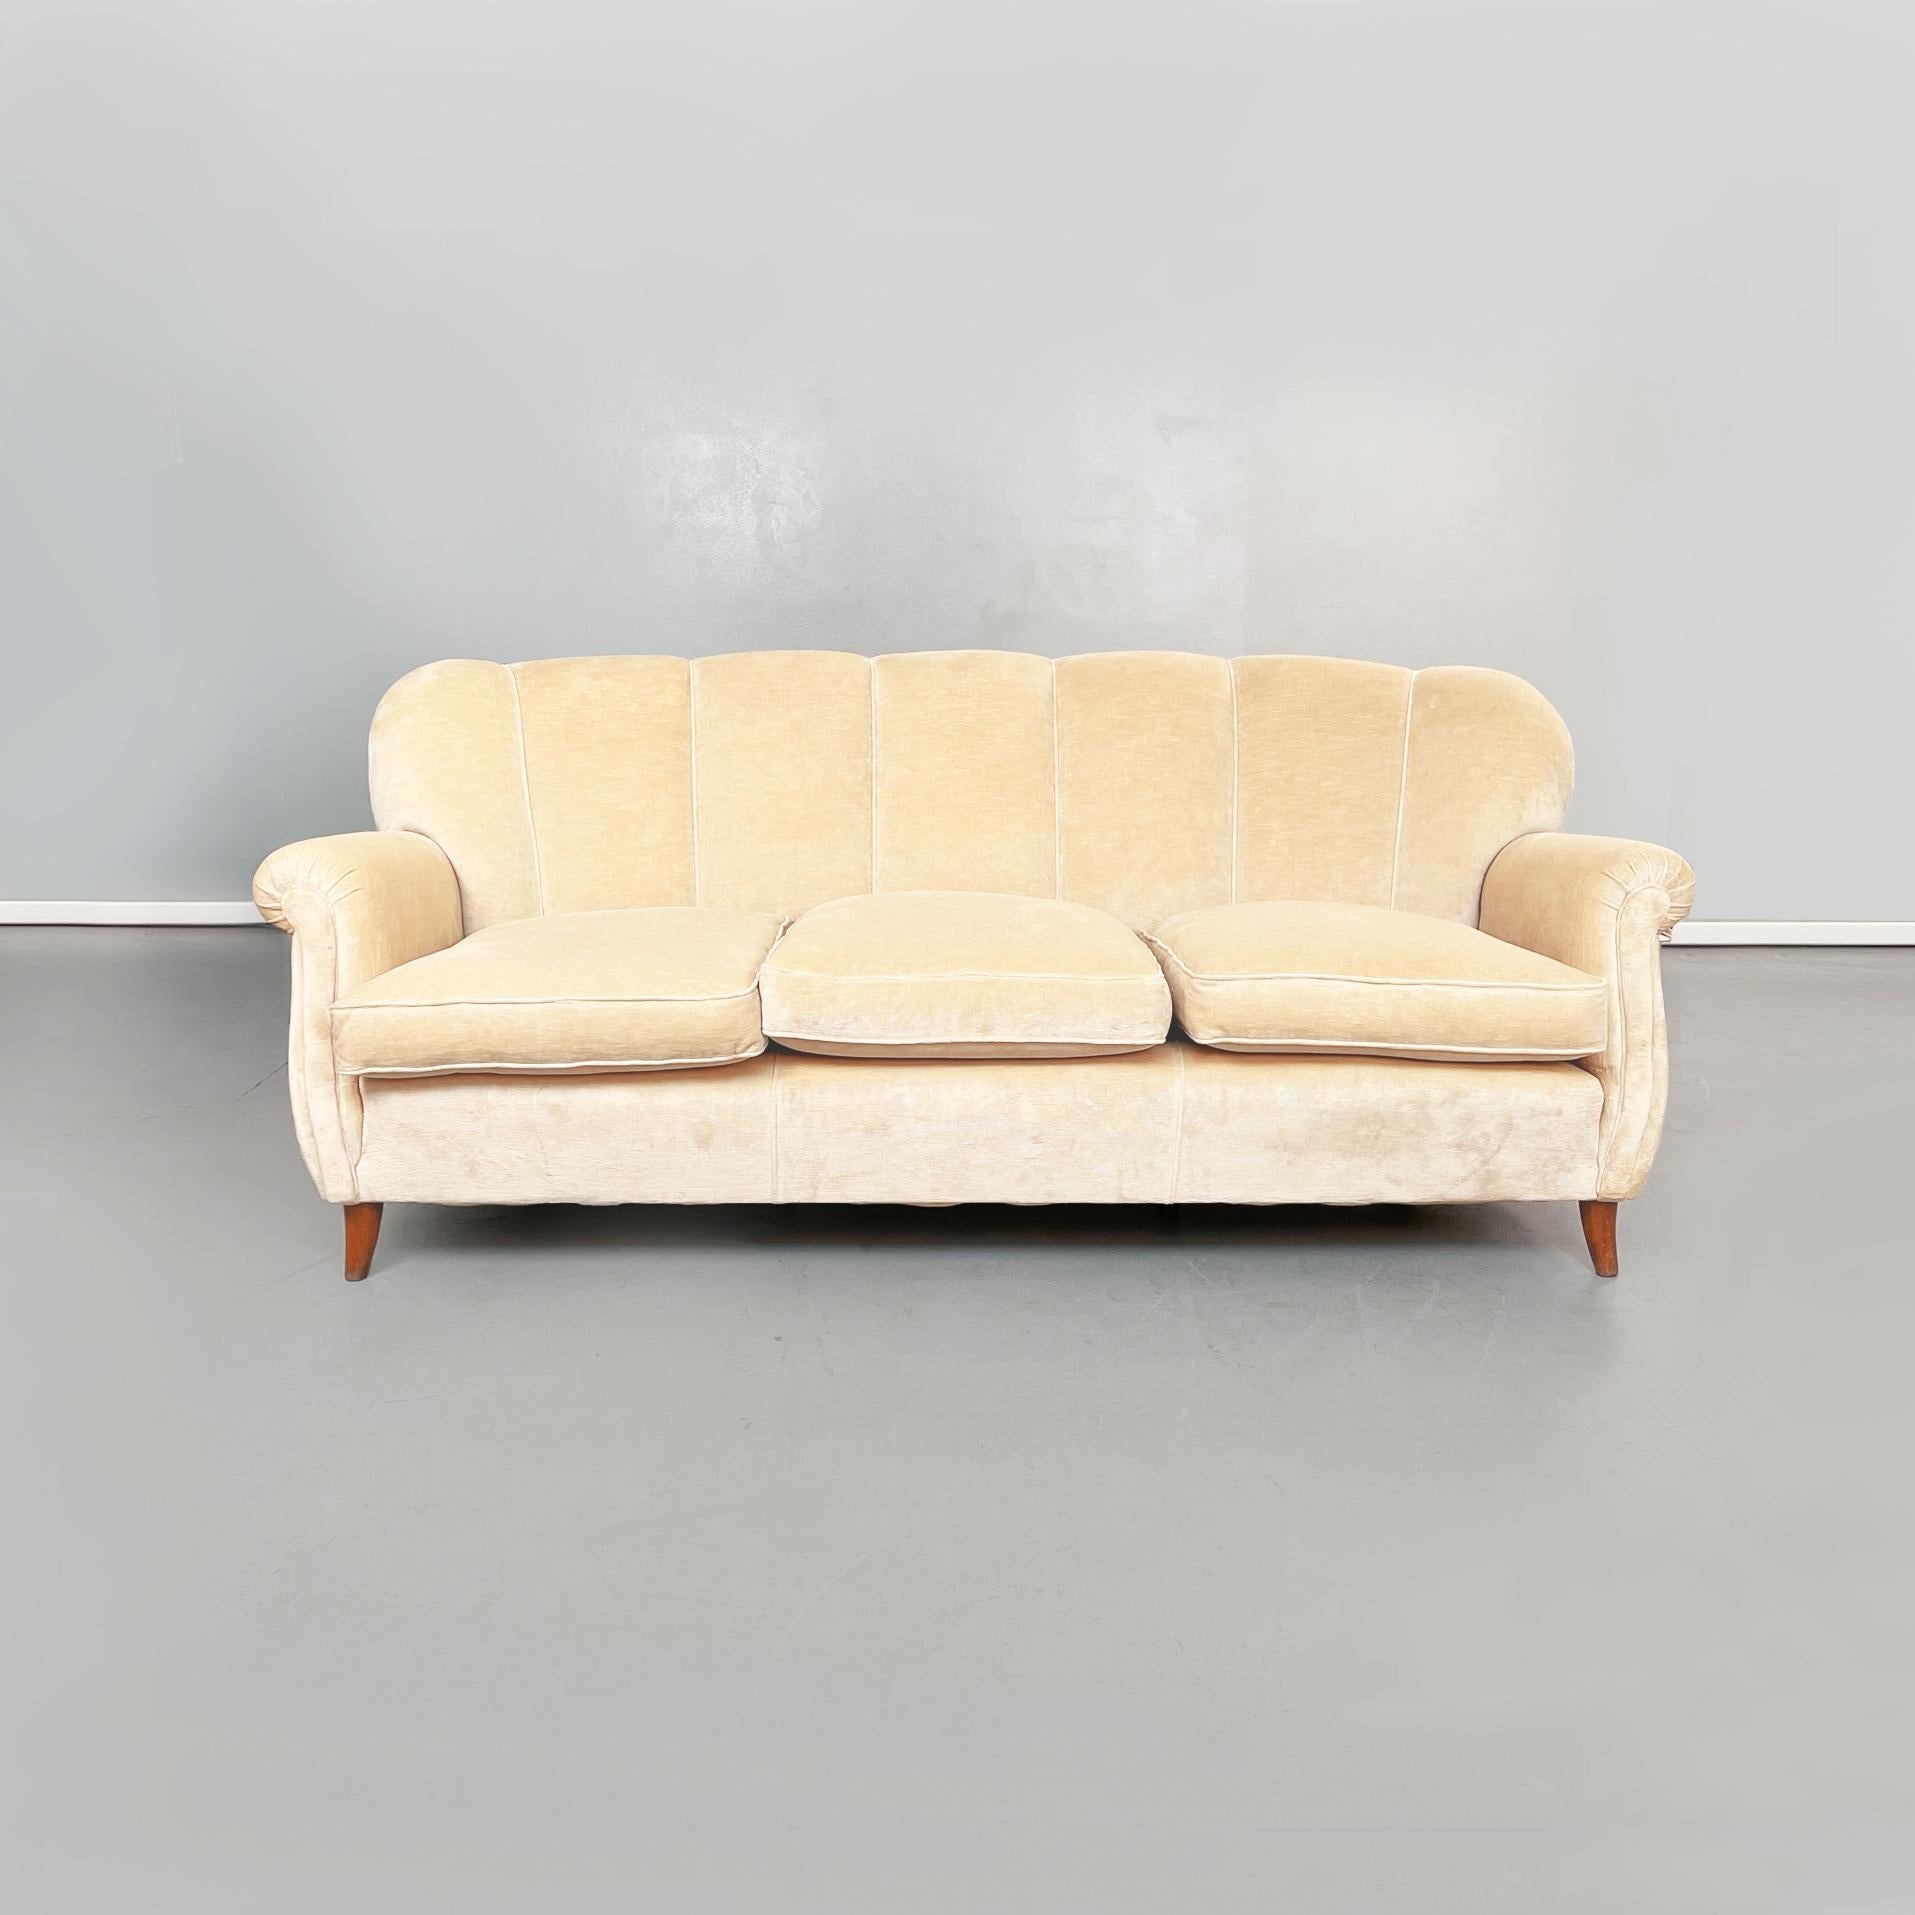 Canapé en bois italien du milieu du siècle dernier en tissu beige, années 1960
Un canapé trois places en tissu beige et structure en bois. Le canapé a une assise composée de 3 coussins qui suivent la forme du dossier. Le dos présente plusieurs